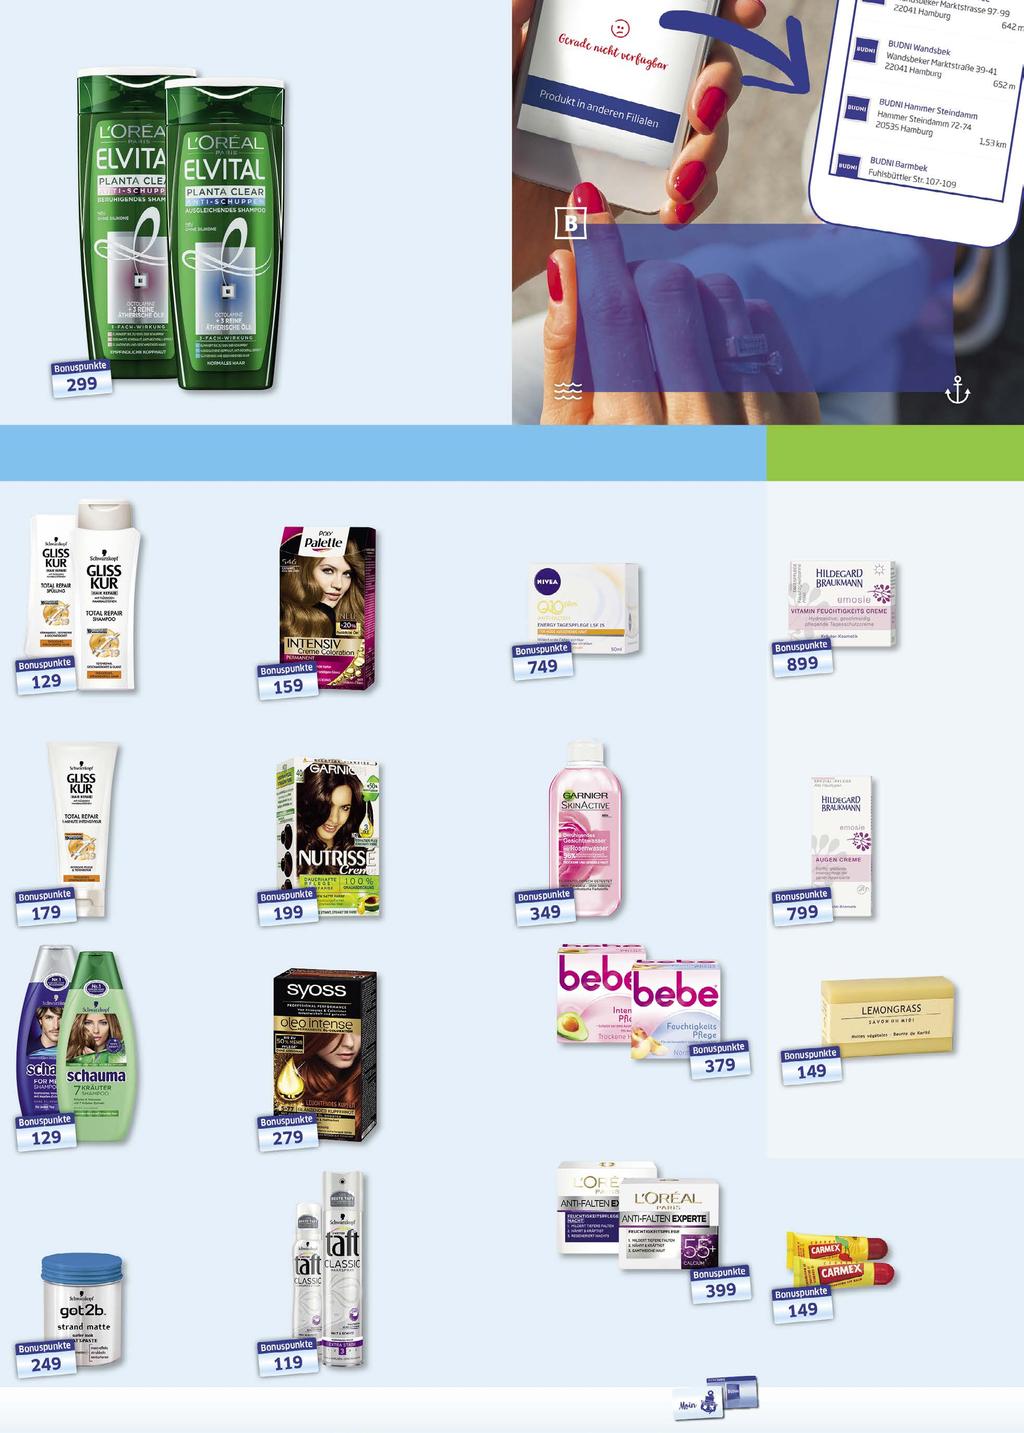 Elvital Shampoo oder Spülung 100 ml = 1,20 2 2, 99 3,59 Pflege & Frische NEU IN DER BUDNI APP: Dein Produkt ist in Deiner Filiale nicht erhältlich? Mit einem Klick weißt du jetzt wo!